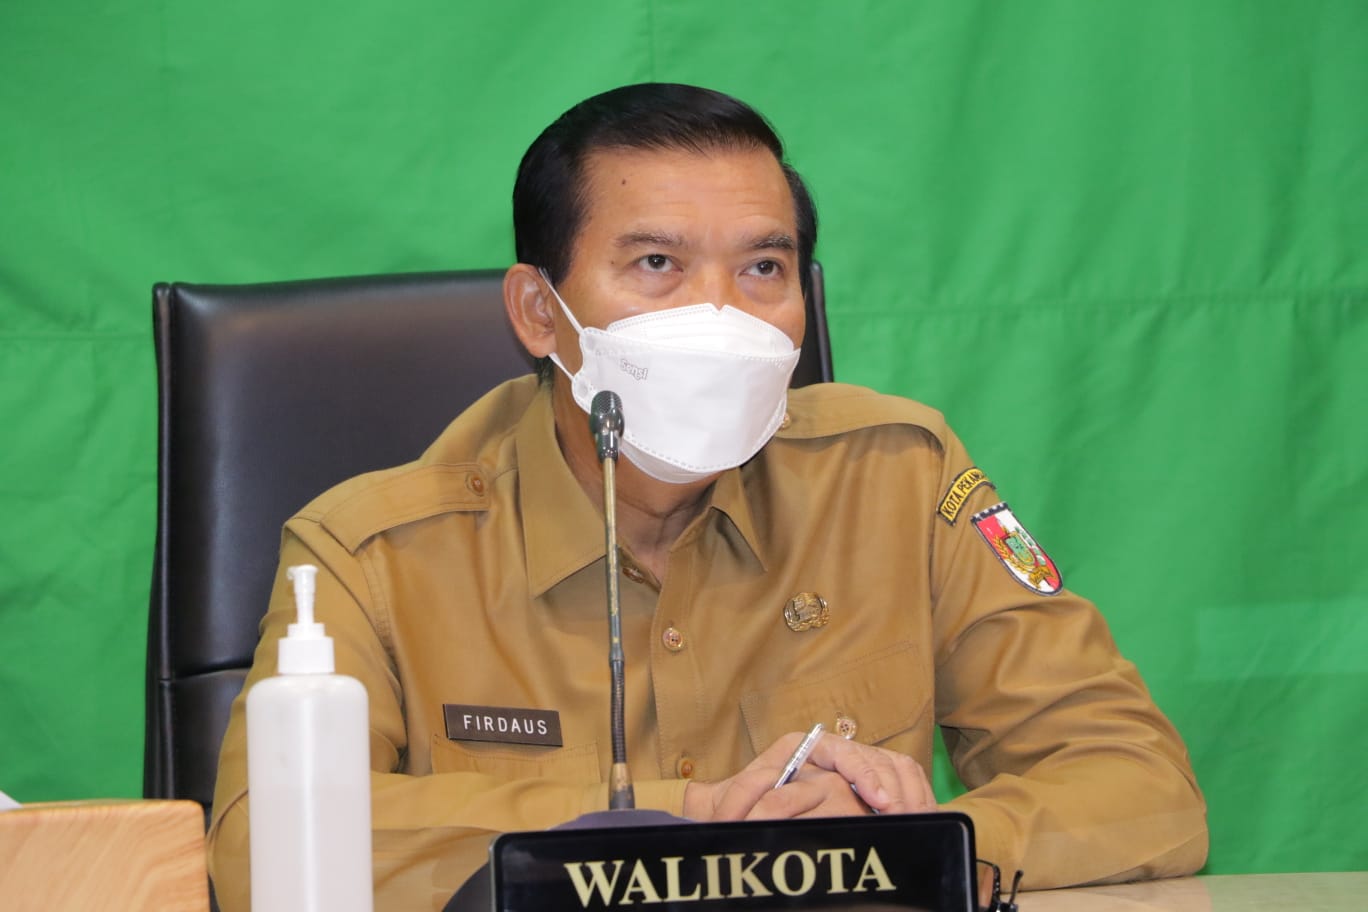 Abai Gunakan Masker, Wali Kota: Mesti Lindungi Diri, Keluarga, dan Lingkungan dengan Prokes